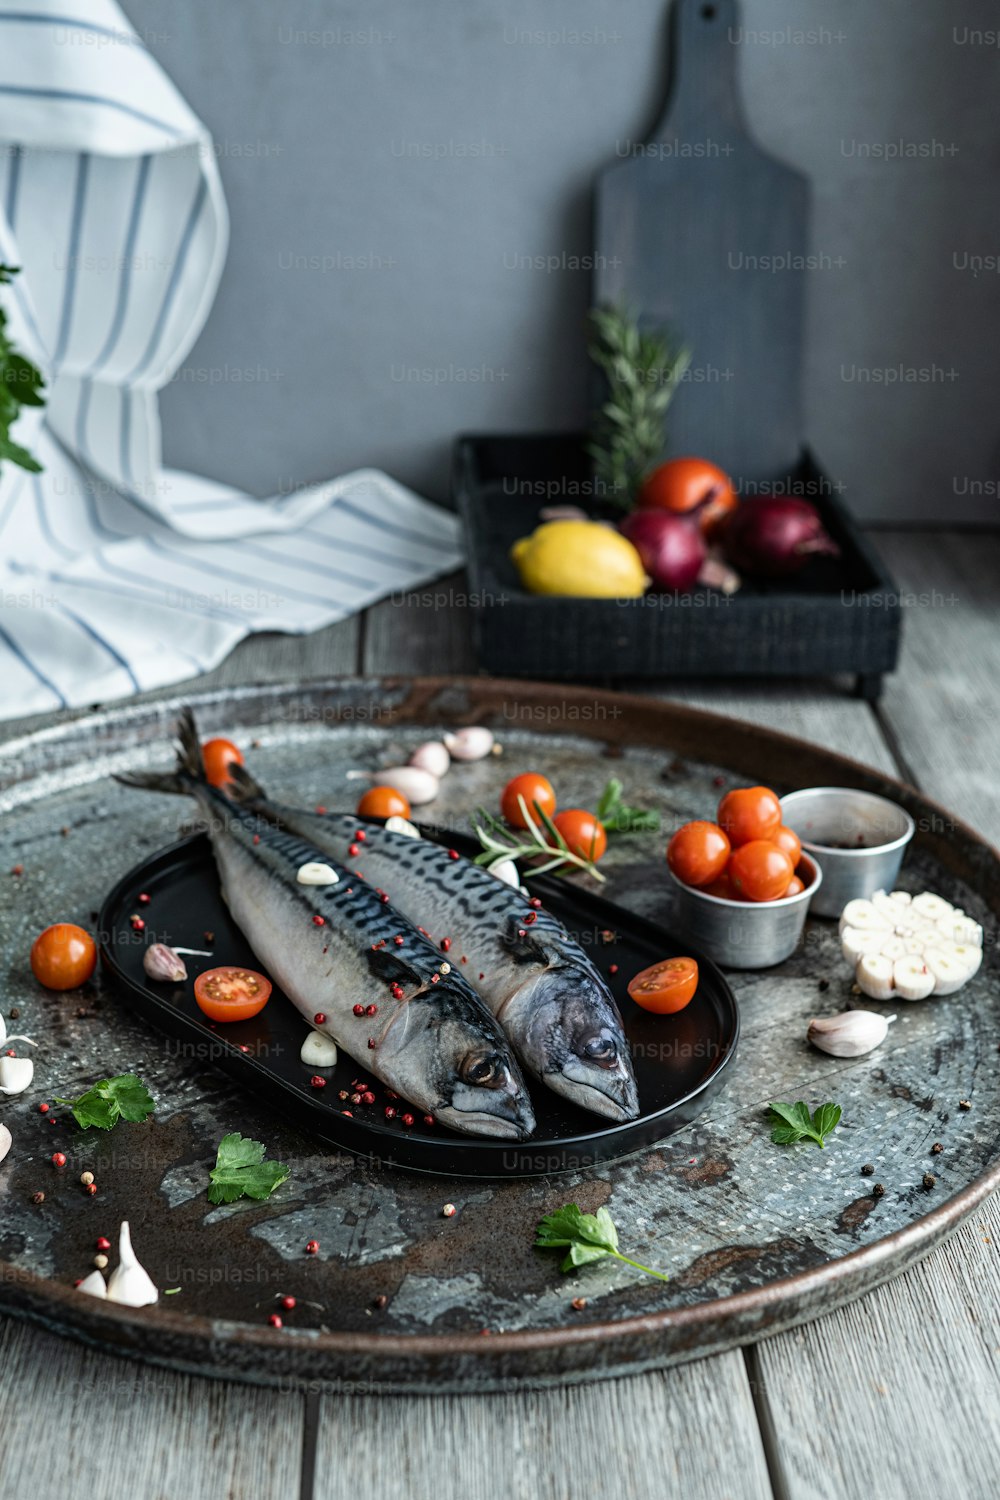 ein Teller mit etwas Fisch darauf neben etwas Gemüse